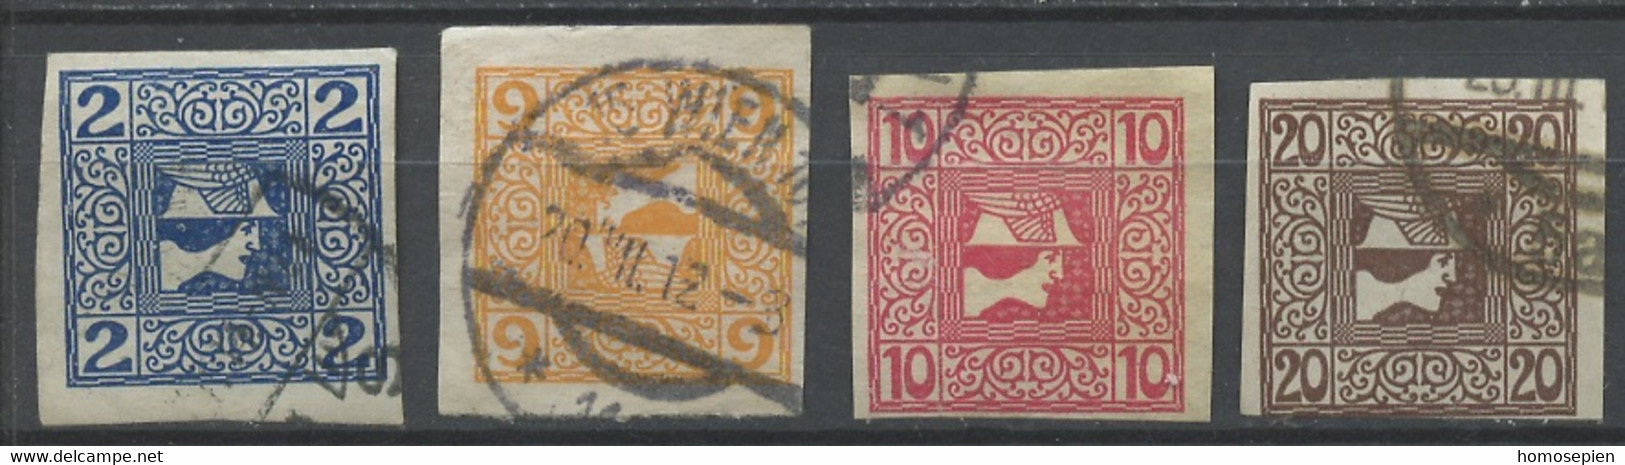 Autriche - Österreich - Austria Journaux 1908-10 Y&T N°J16a à 19a - Michel N°ZM157 à 160 (o) - Mercure - Journaux